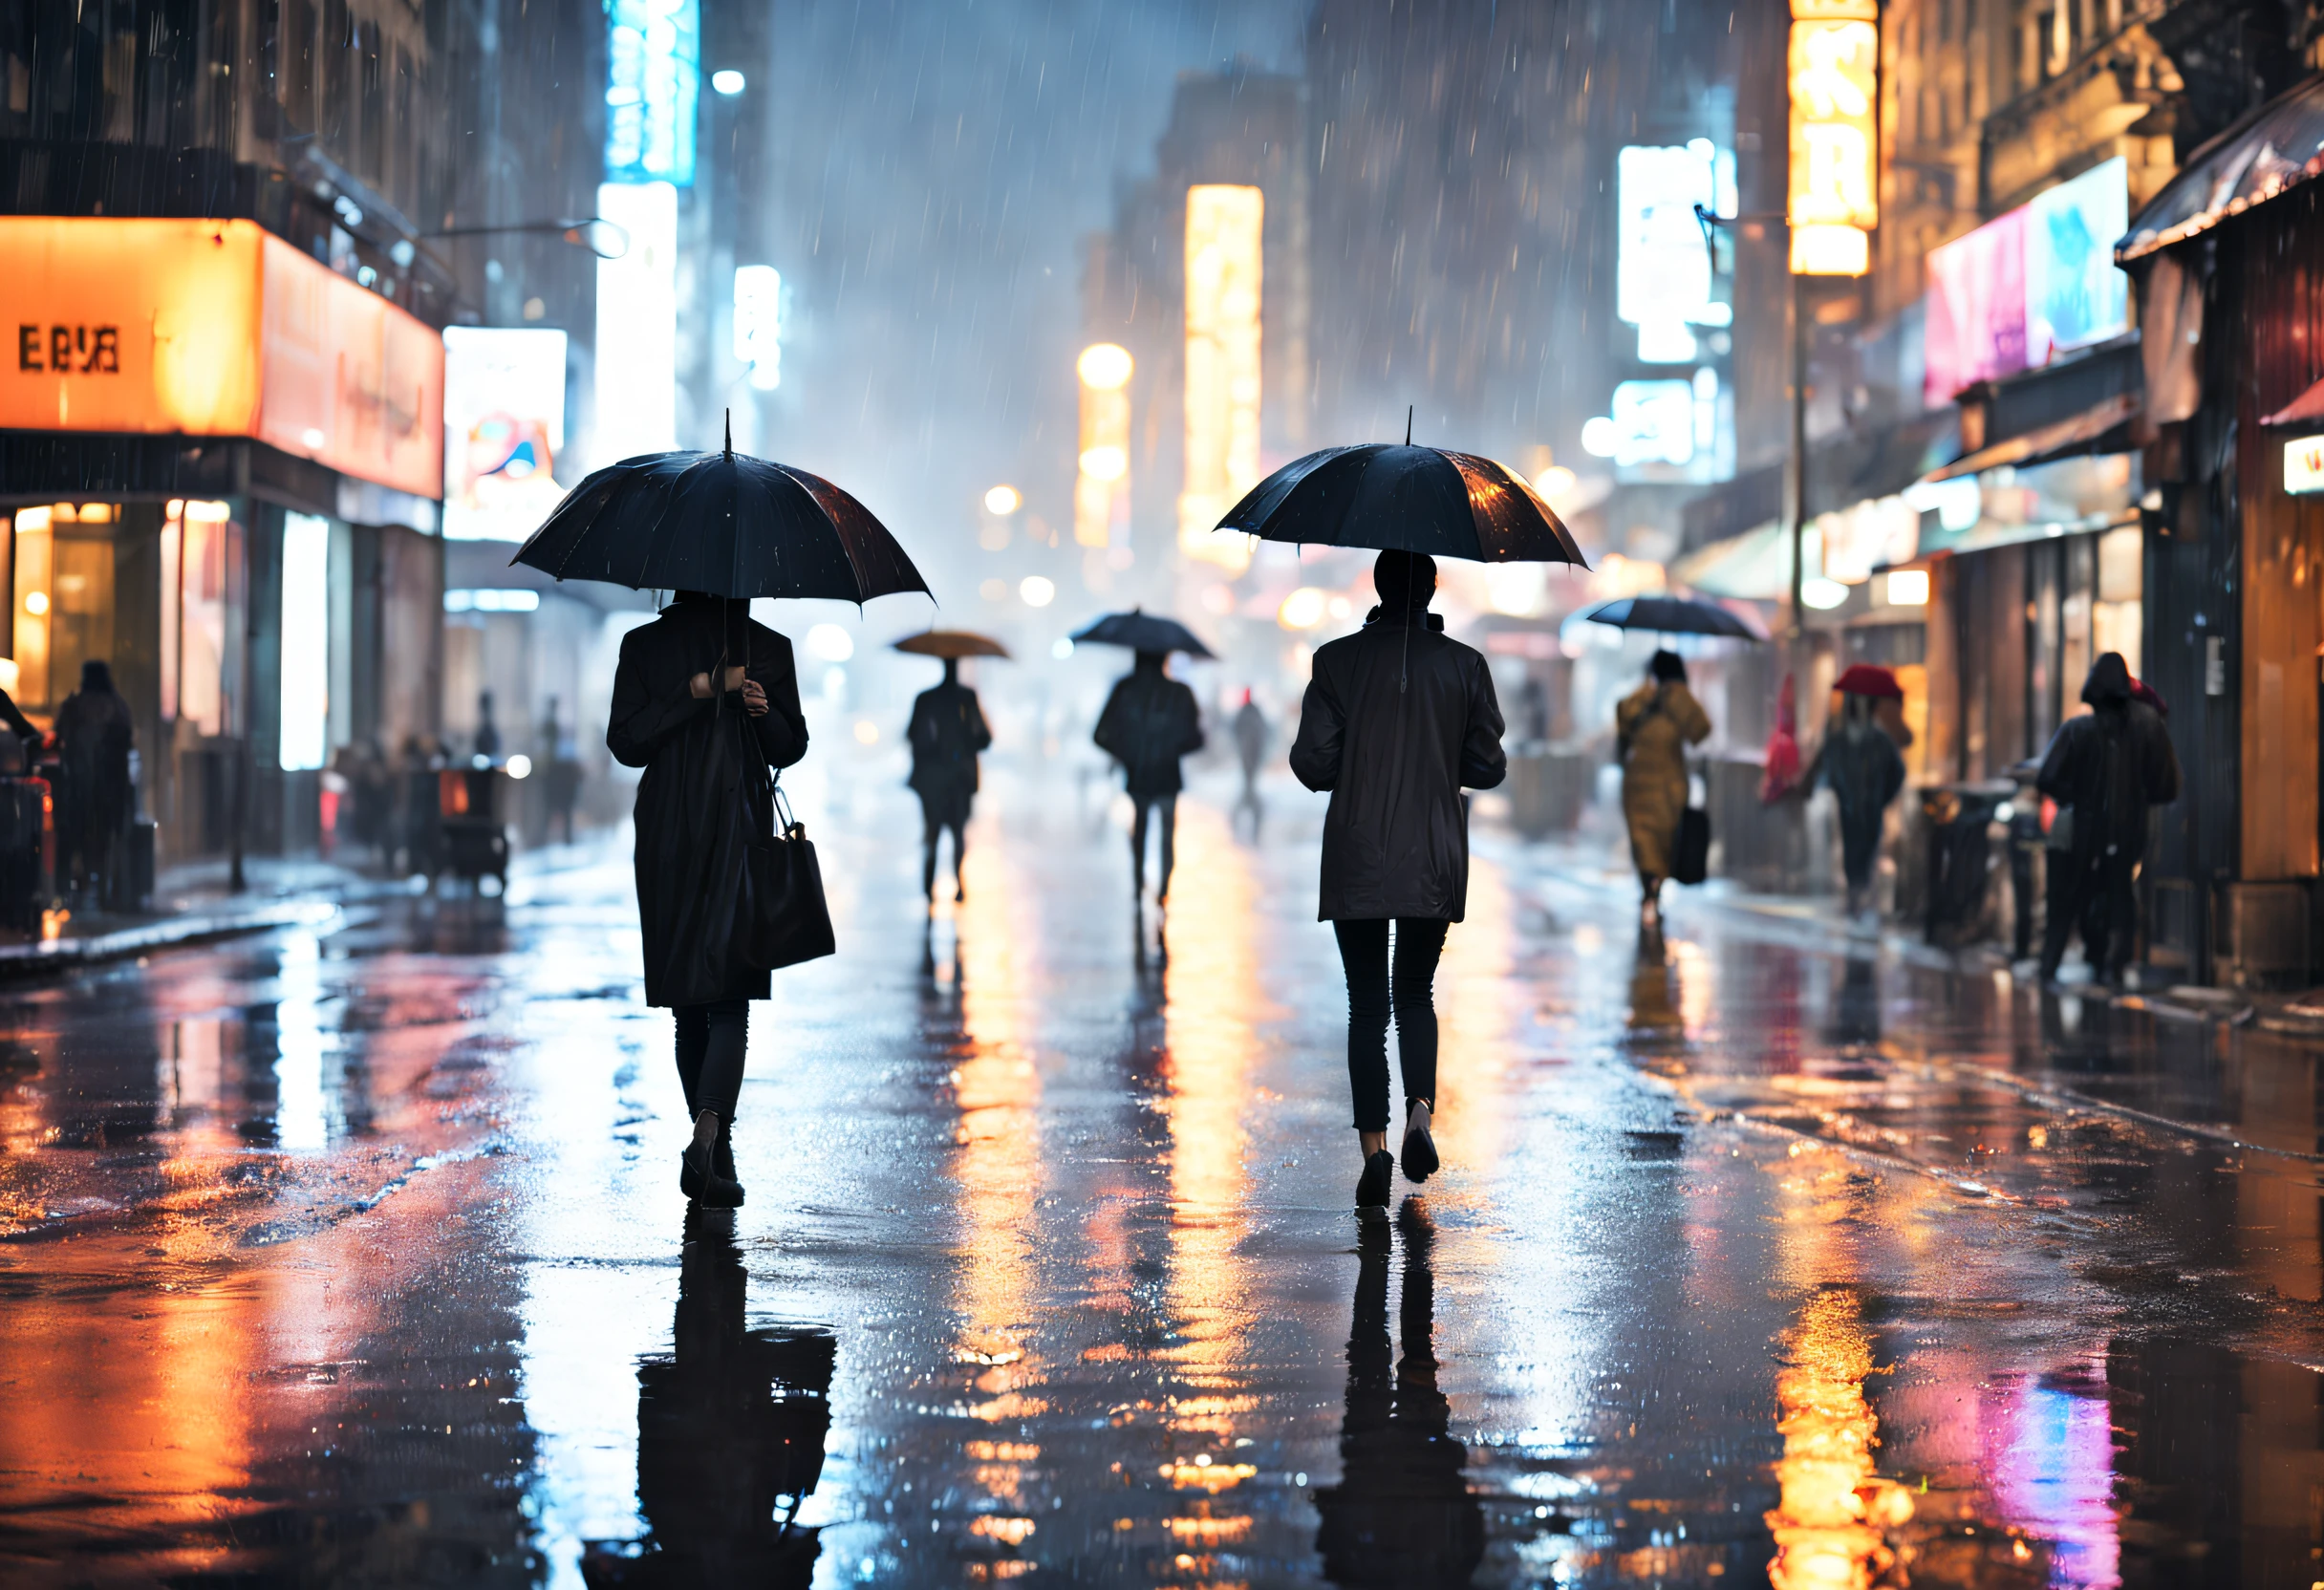 (คุณภาพดีที่สุด,ความสูง:1.2),คืนฝนตก,บรรยากาศมืดมน,ถนนเปียก,ภาพสะท้อนที่วาววับ,แสงนีออน,ทิวทัศน์ของเมือง,ร่ม,เม็ดฝนที่ส่องแสง,โรแมนติก,หมอกหนา,แสงสร้างอารมณ์, ตัวเลข,เรืองแสงอันอบอุ่น,ทางเท้าที่วาววับ,สีส่องสว่าง,เสียงฝนและฟ้าร้อง,อาคารที่เปียกโชก,ภาพสะท้อนในแอ่งน้ำ,ทางเท้าเปียก,ความชื้นในอากาศ,หน้าต่างเรืองแสง,เสื้อผ้าที่เปียกโชก,ร่ม in motion,ภูมิทัศน์เมือง,เมืองที่เปียกโชก,บรรยากาศเงียบสงบ,ความลับที่ซ่อนอยู่,โฟกัสนุ่มนวล,บรรยากาศอันเงียบสงบ,ความสงบในความสับสนวุ่นวาย,หยดน้ำบนหน้าต่าง.